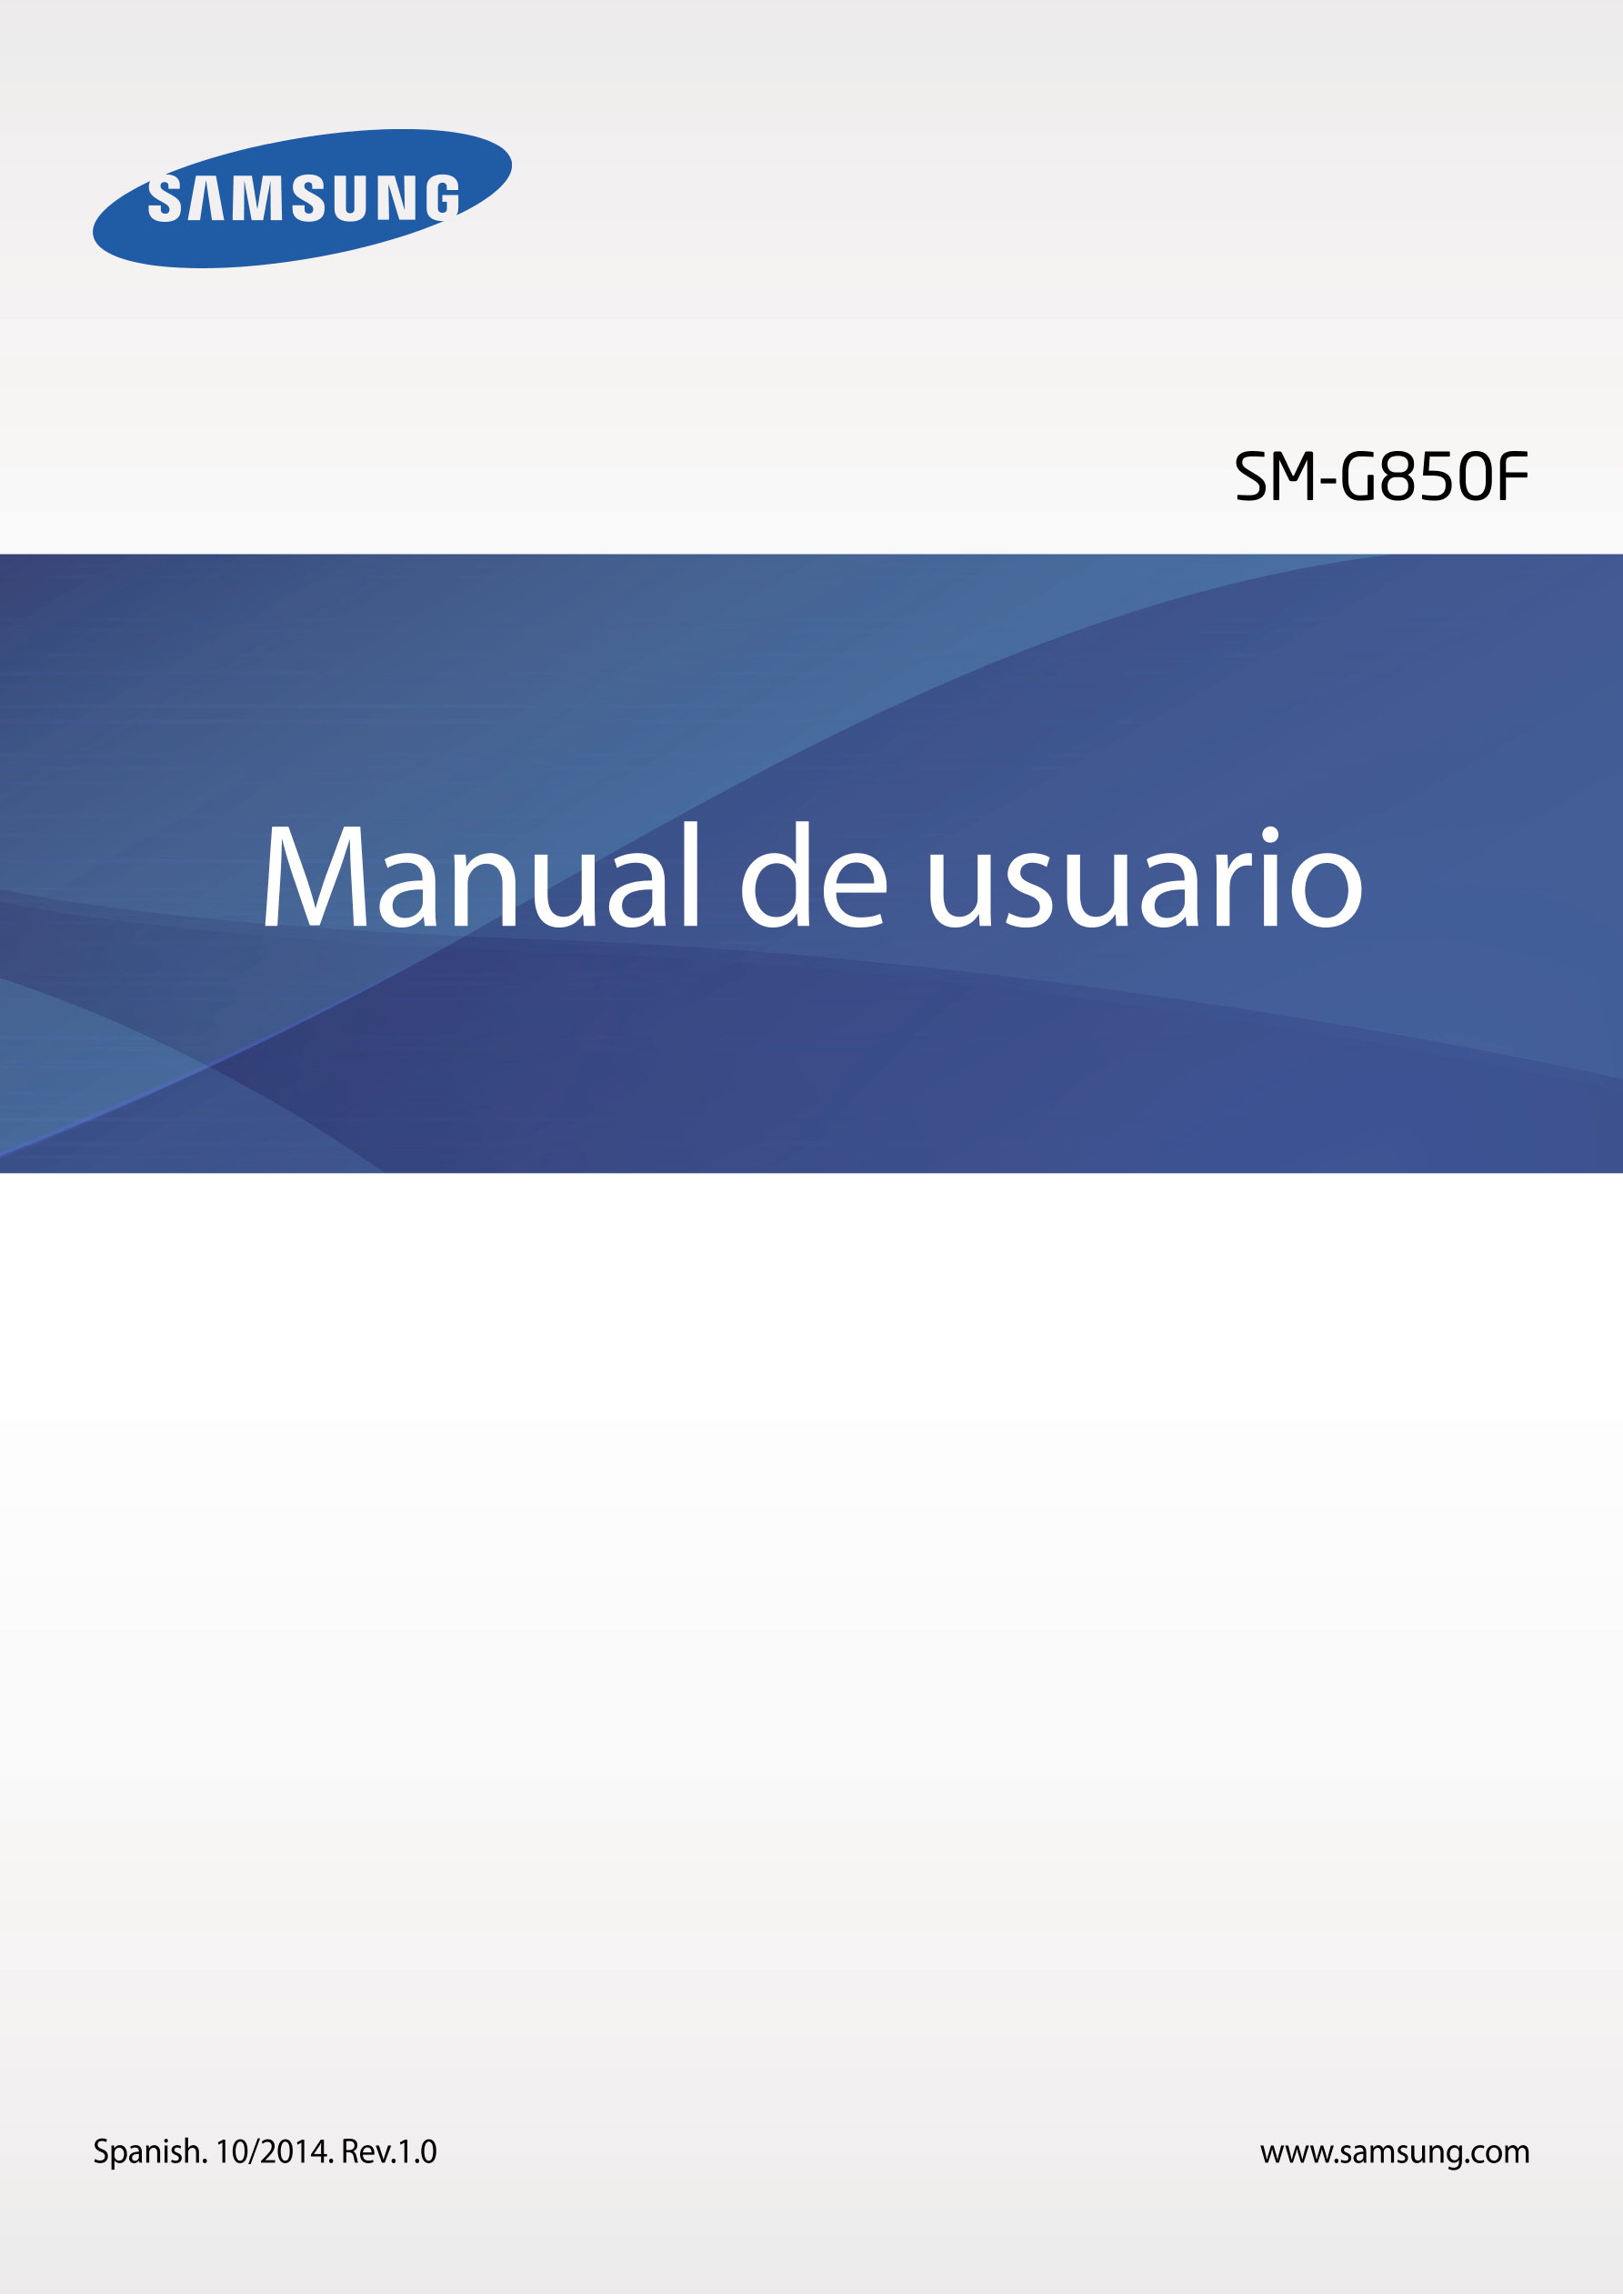 SM-G850F
Manual de usuario
Spanish. 10/2014. Rev.1.0 www.samsung.com